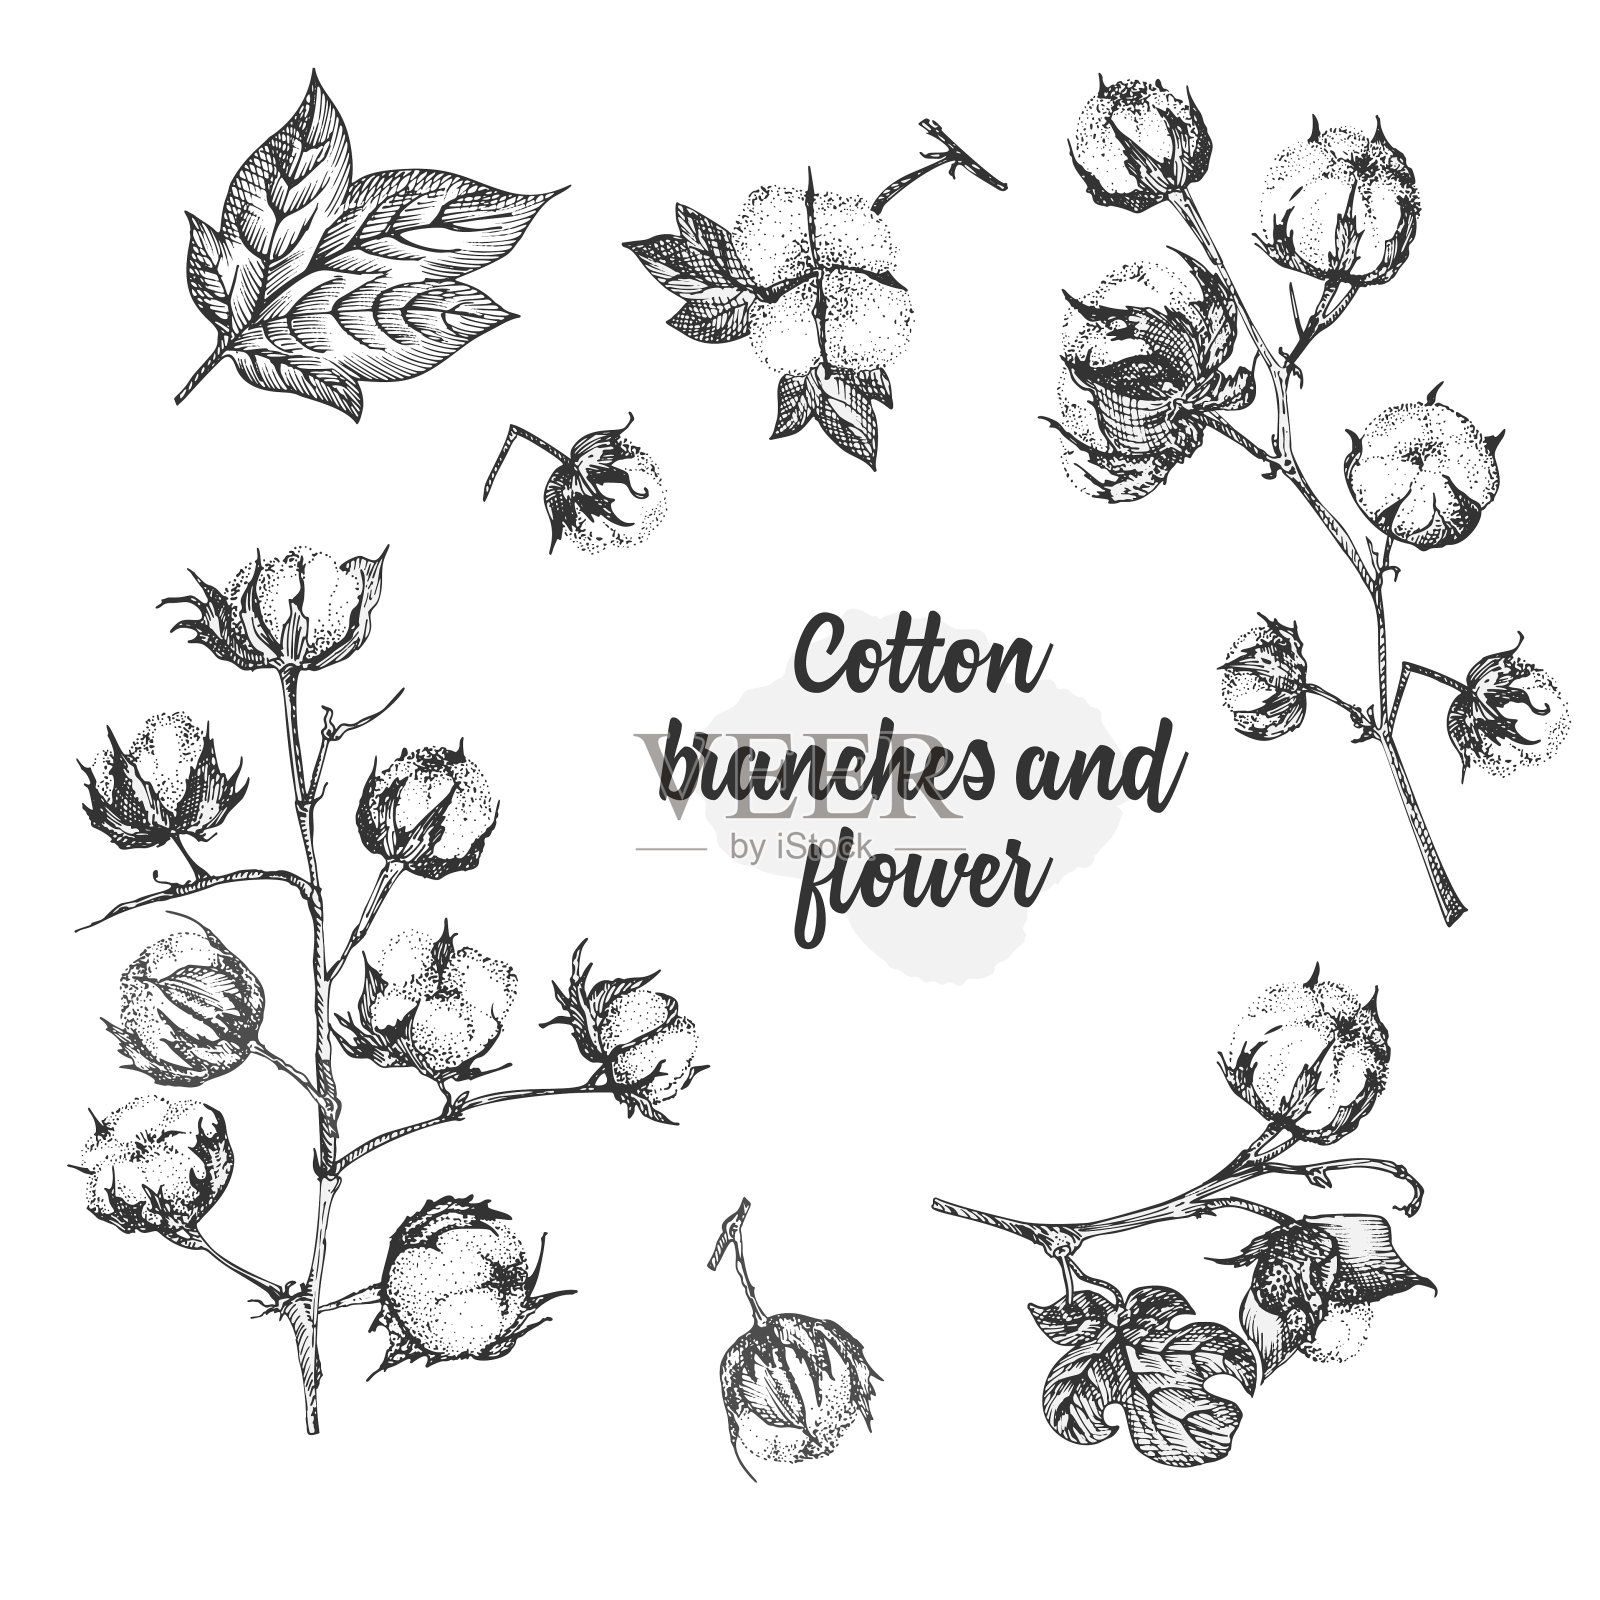 一组棉花植物的细枝、花和叶子。手绘素描植物插图。雕刻风格。黑白插图。插画图片素材